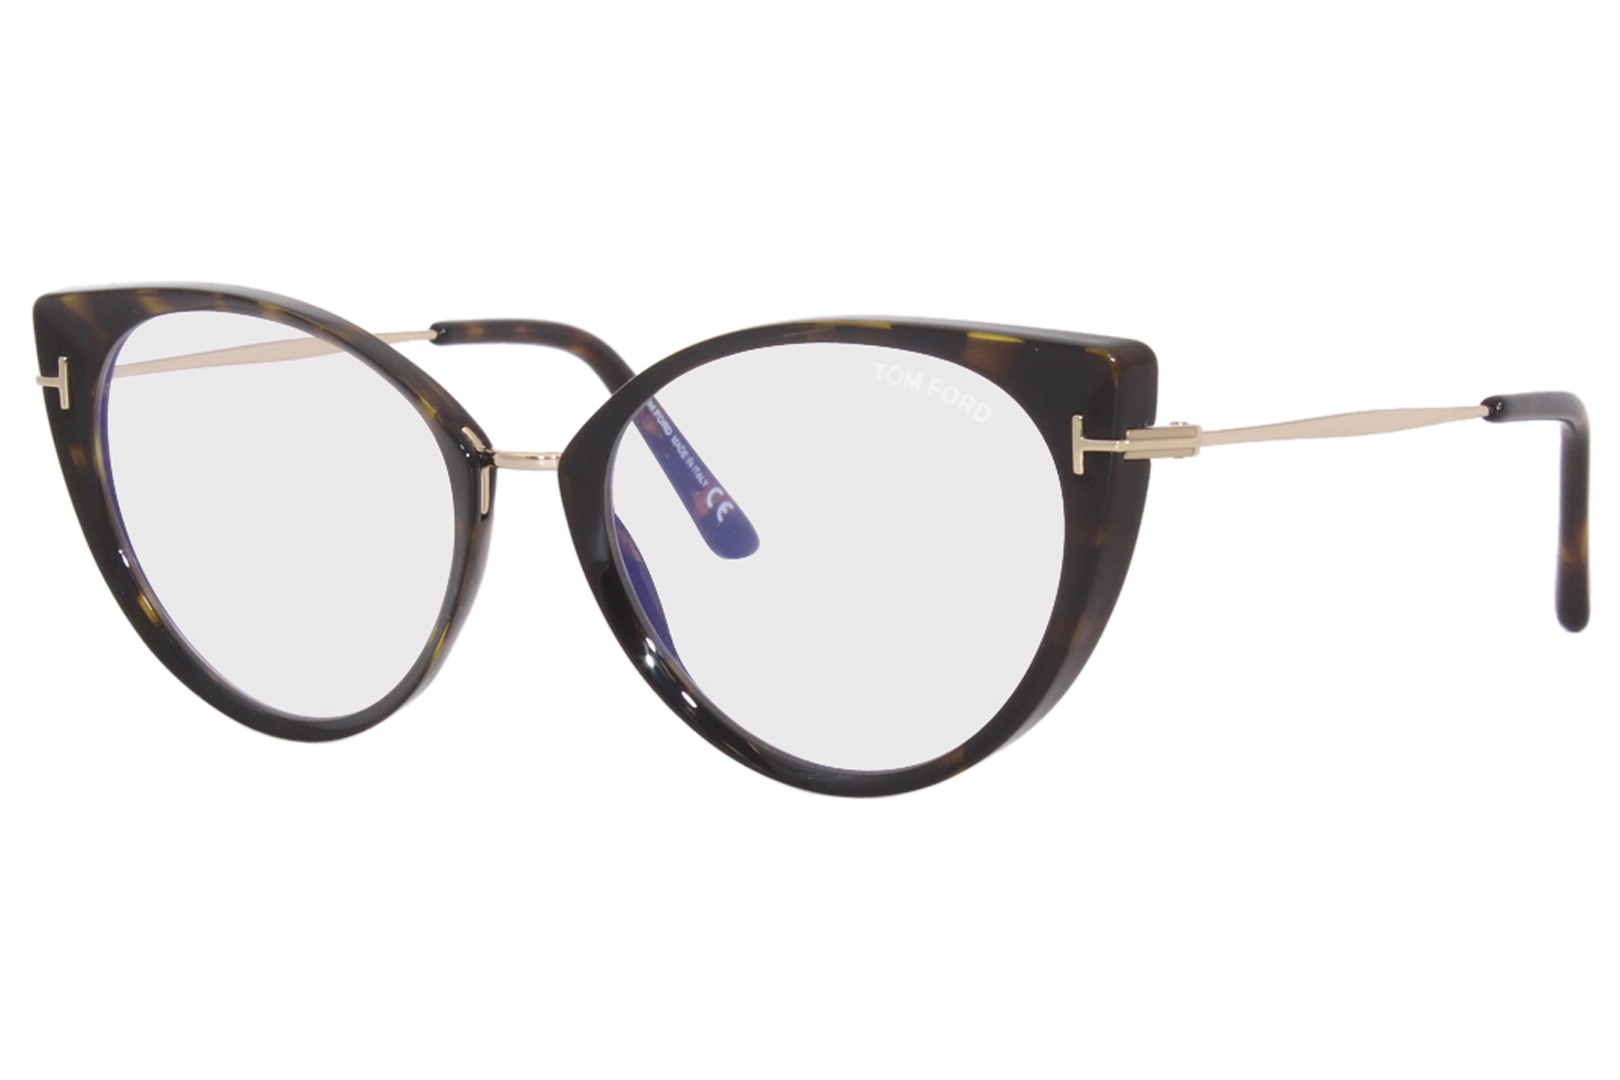 Tom Ford TF5815-B 052 Eyeglasses Women's Shiny Dark Havana/Blue Block  54-18-140 